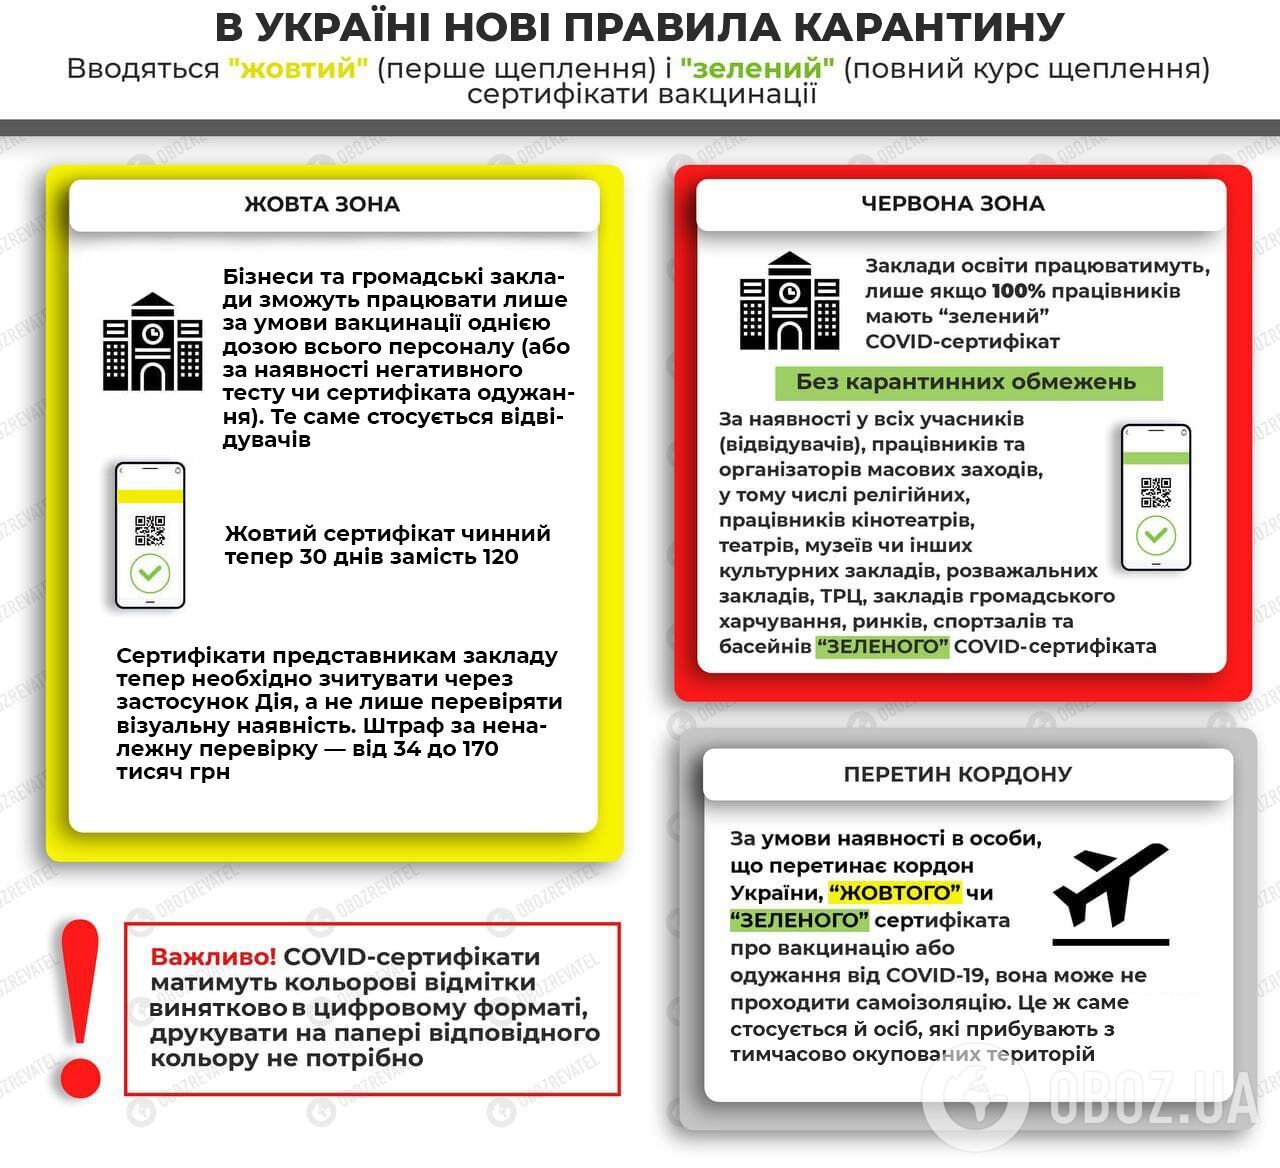 Правила карантину в епідеміологічних зонах України